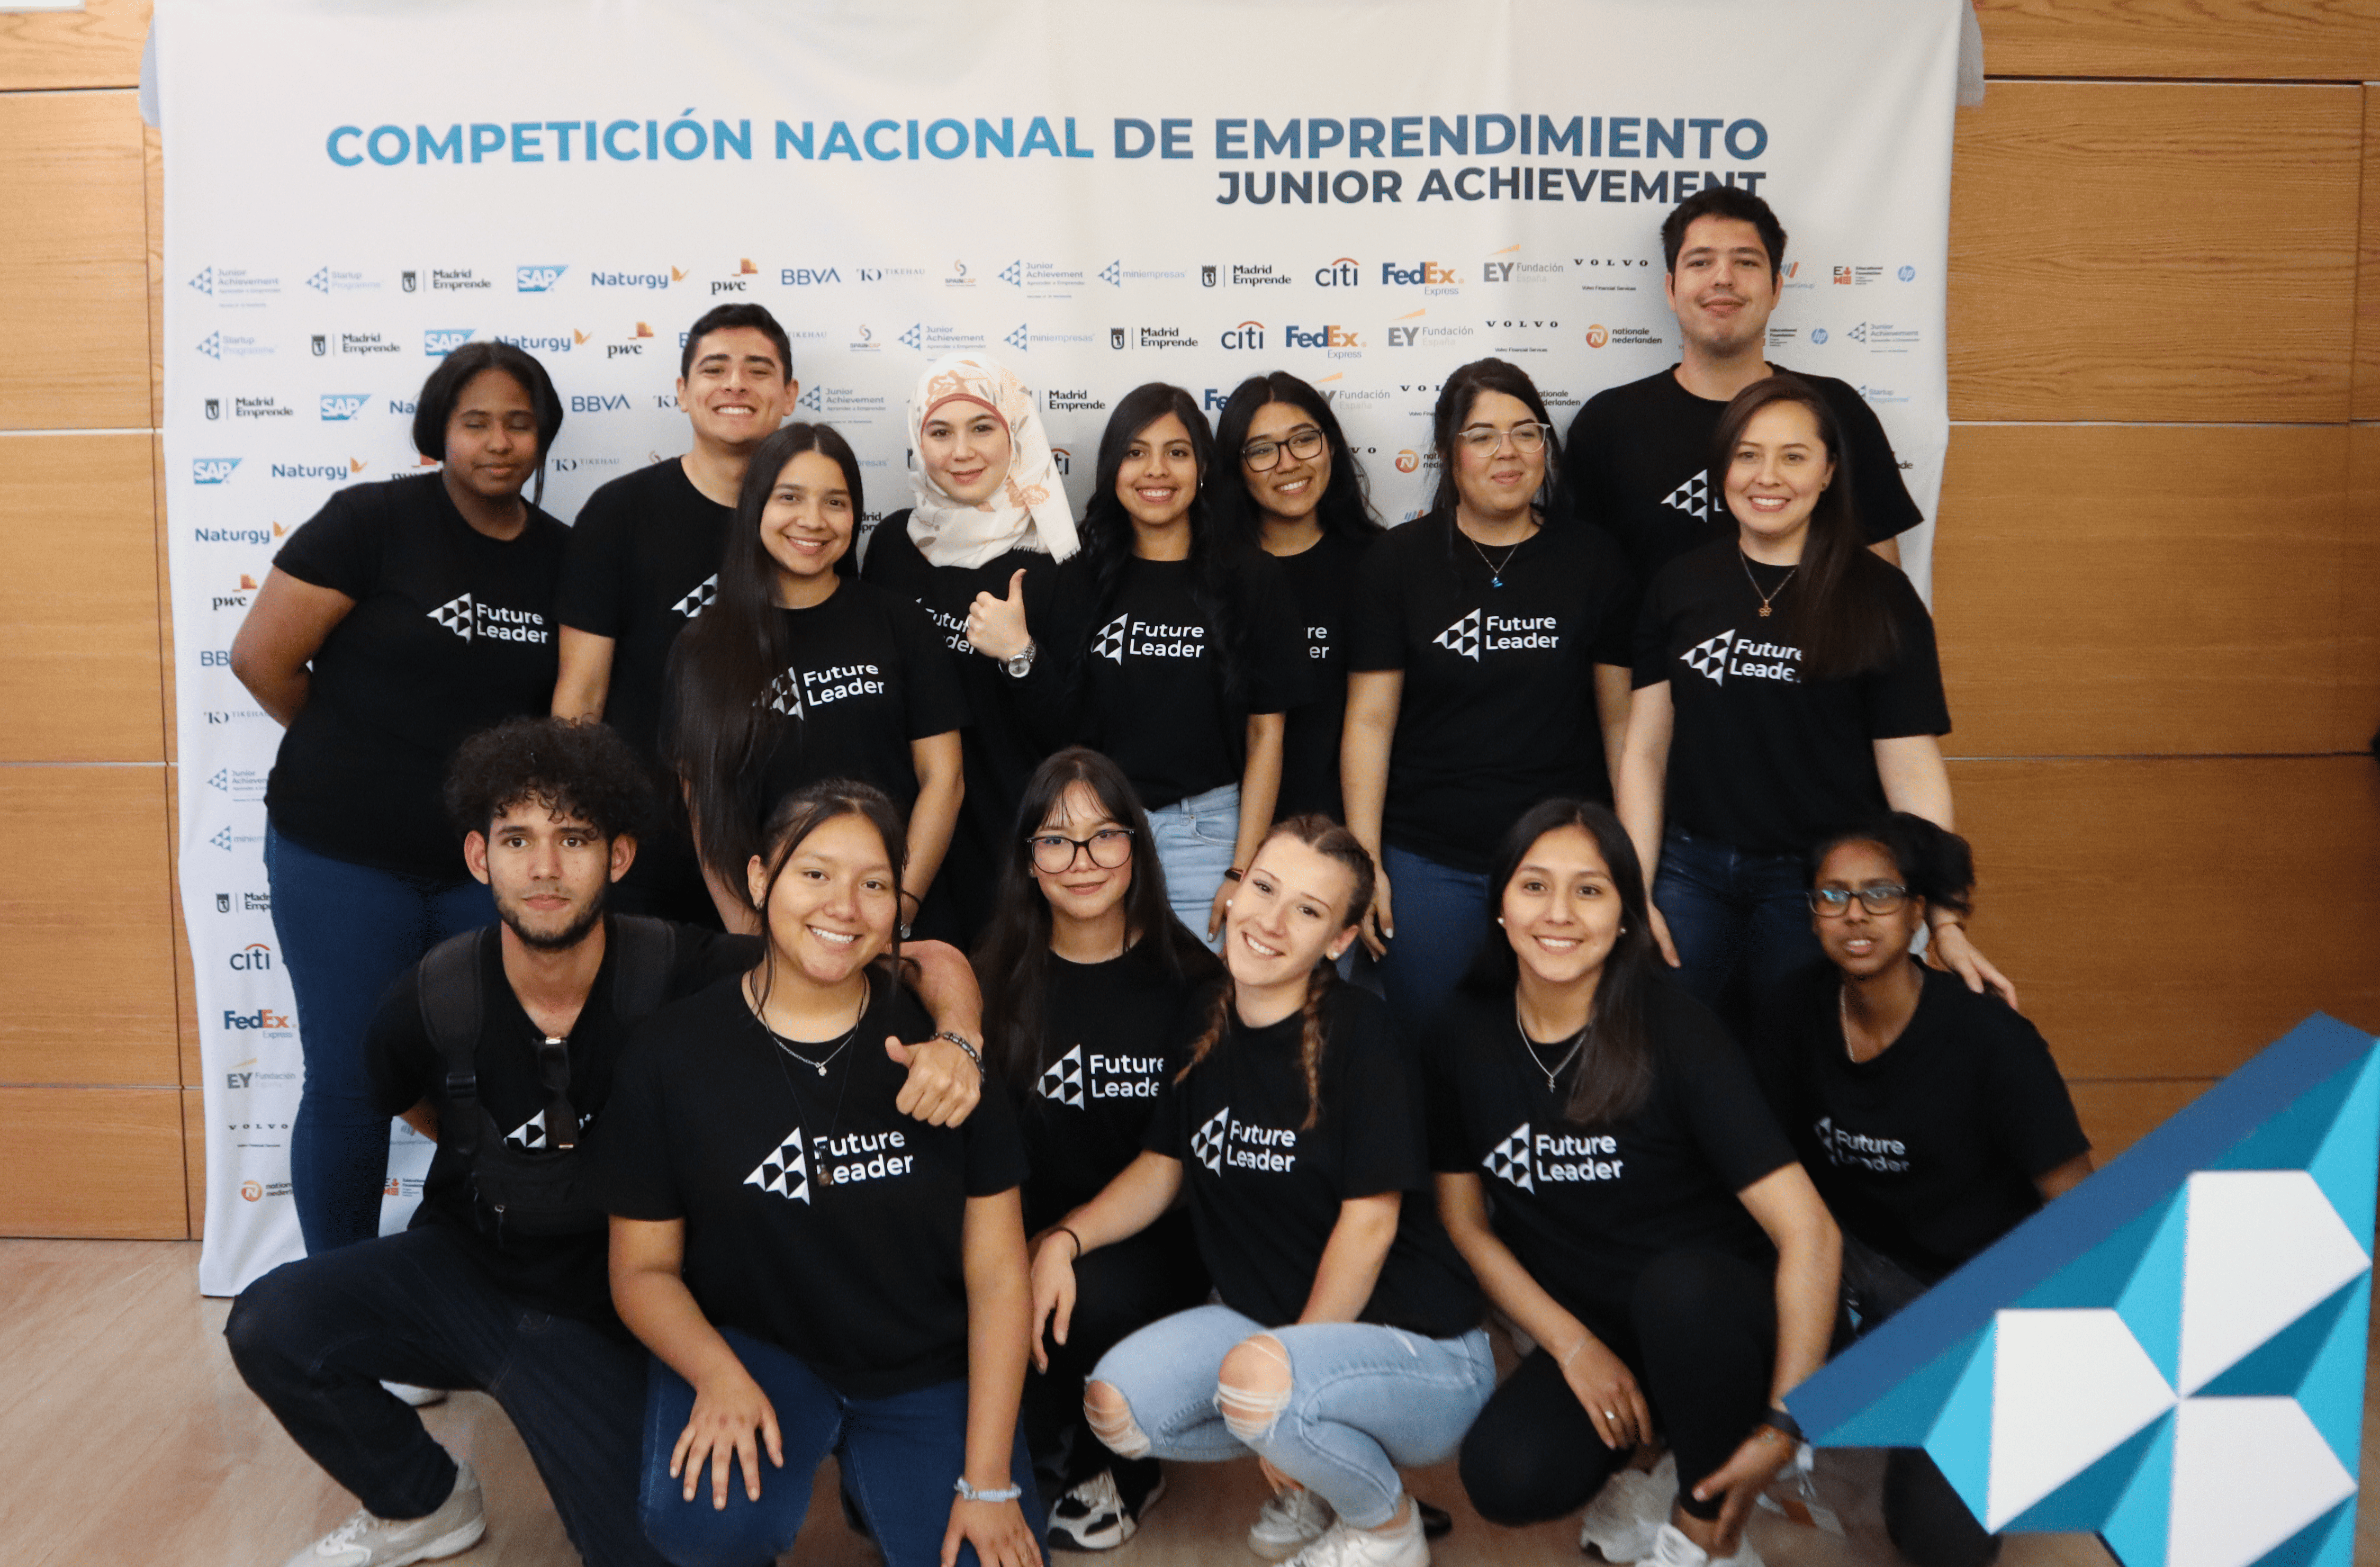 Asociación La Rueca y Junior Achievement ofrecen a 15 jóvenes su primera aproximación al mercado laboral